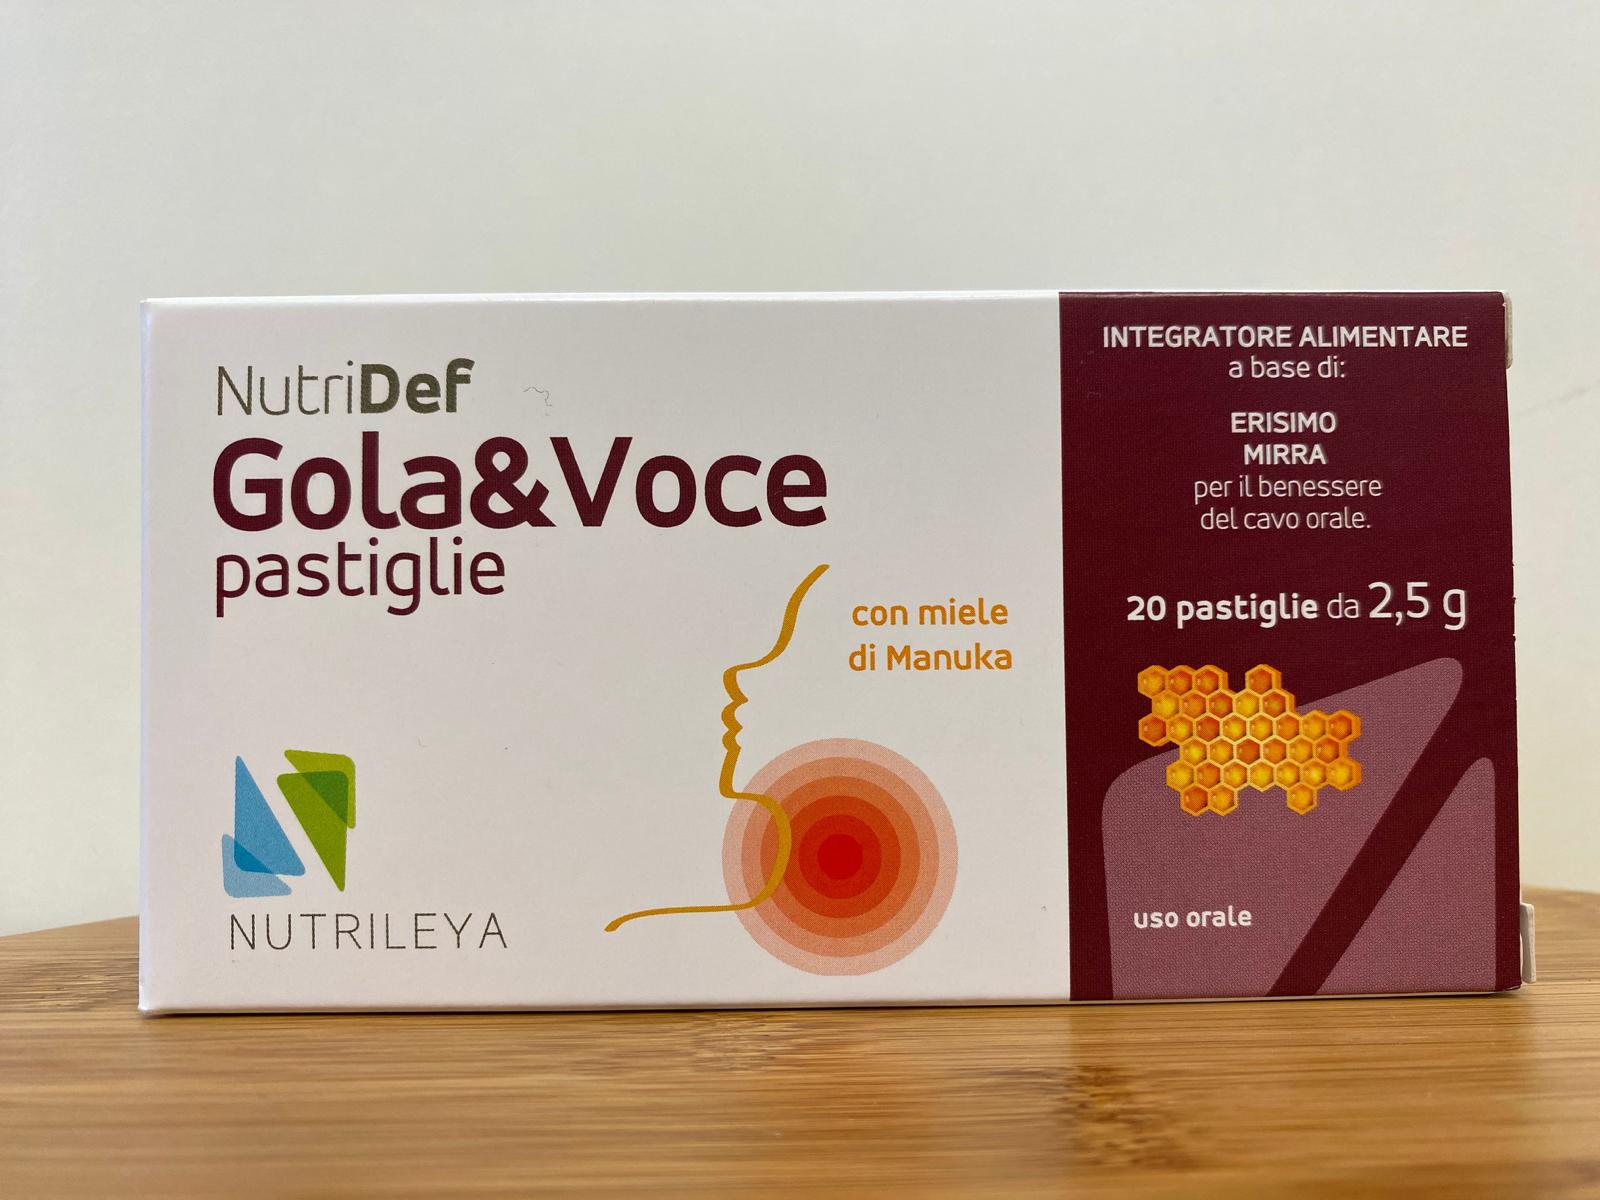 Nutrileya: NutriDef Gola & Voce pastiglie